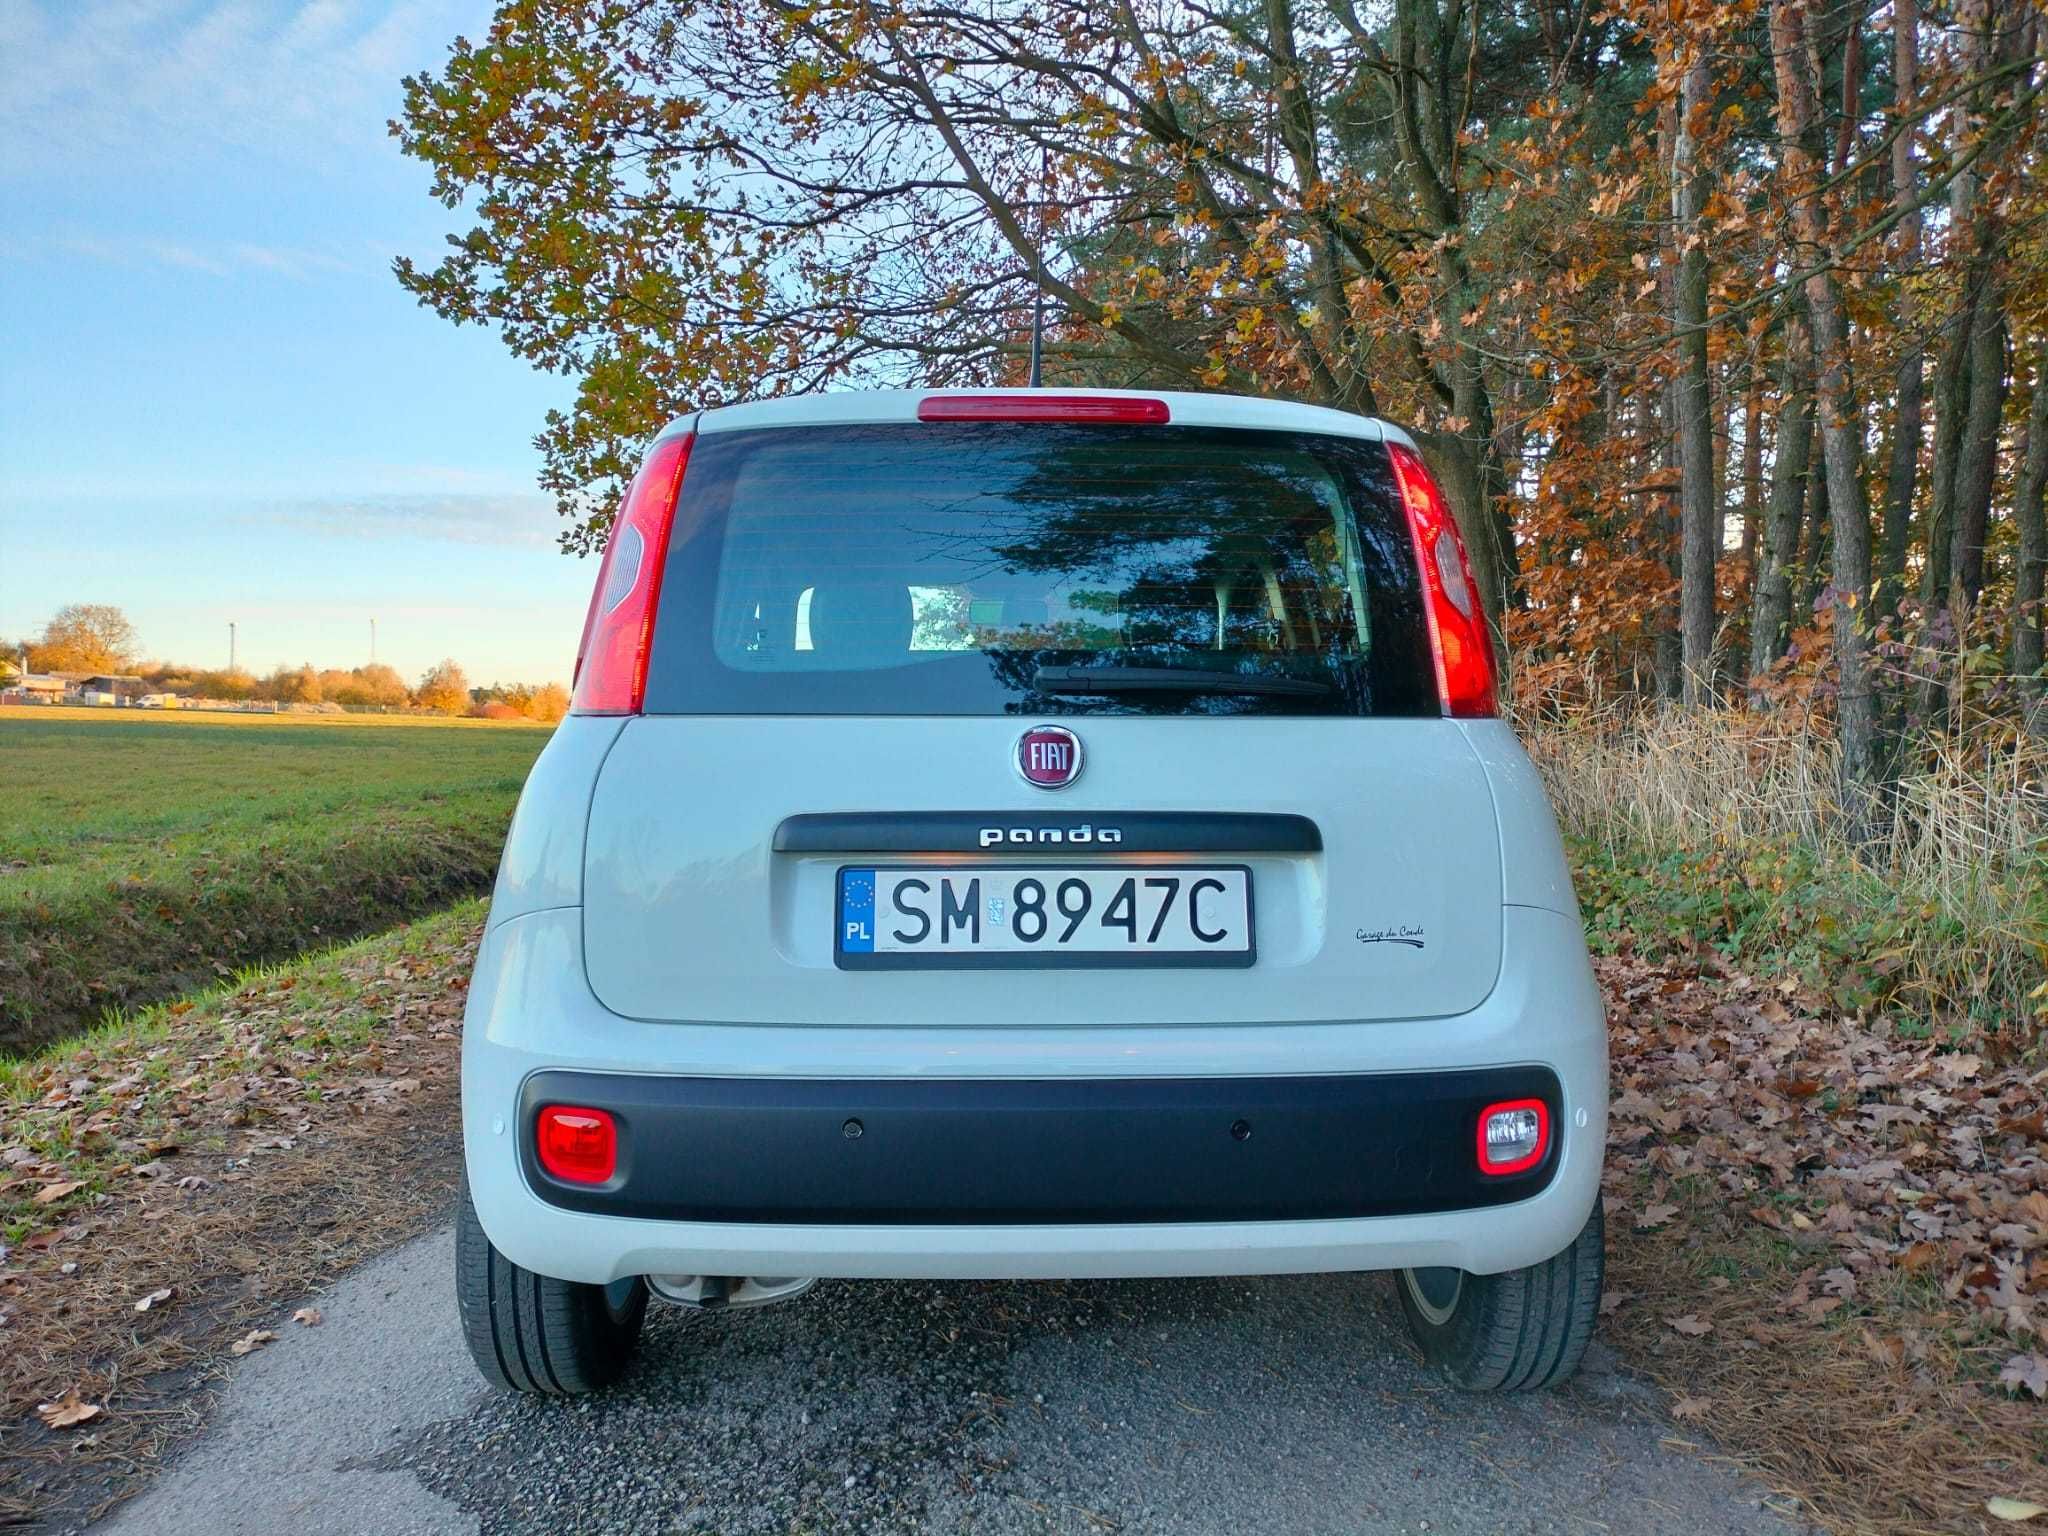 Fiat Panda 2020 klimatyzacja 12600 km zapraszam